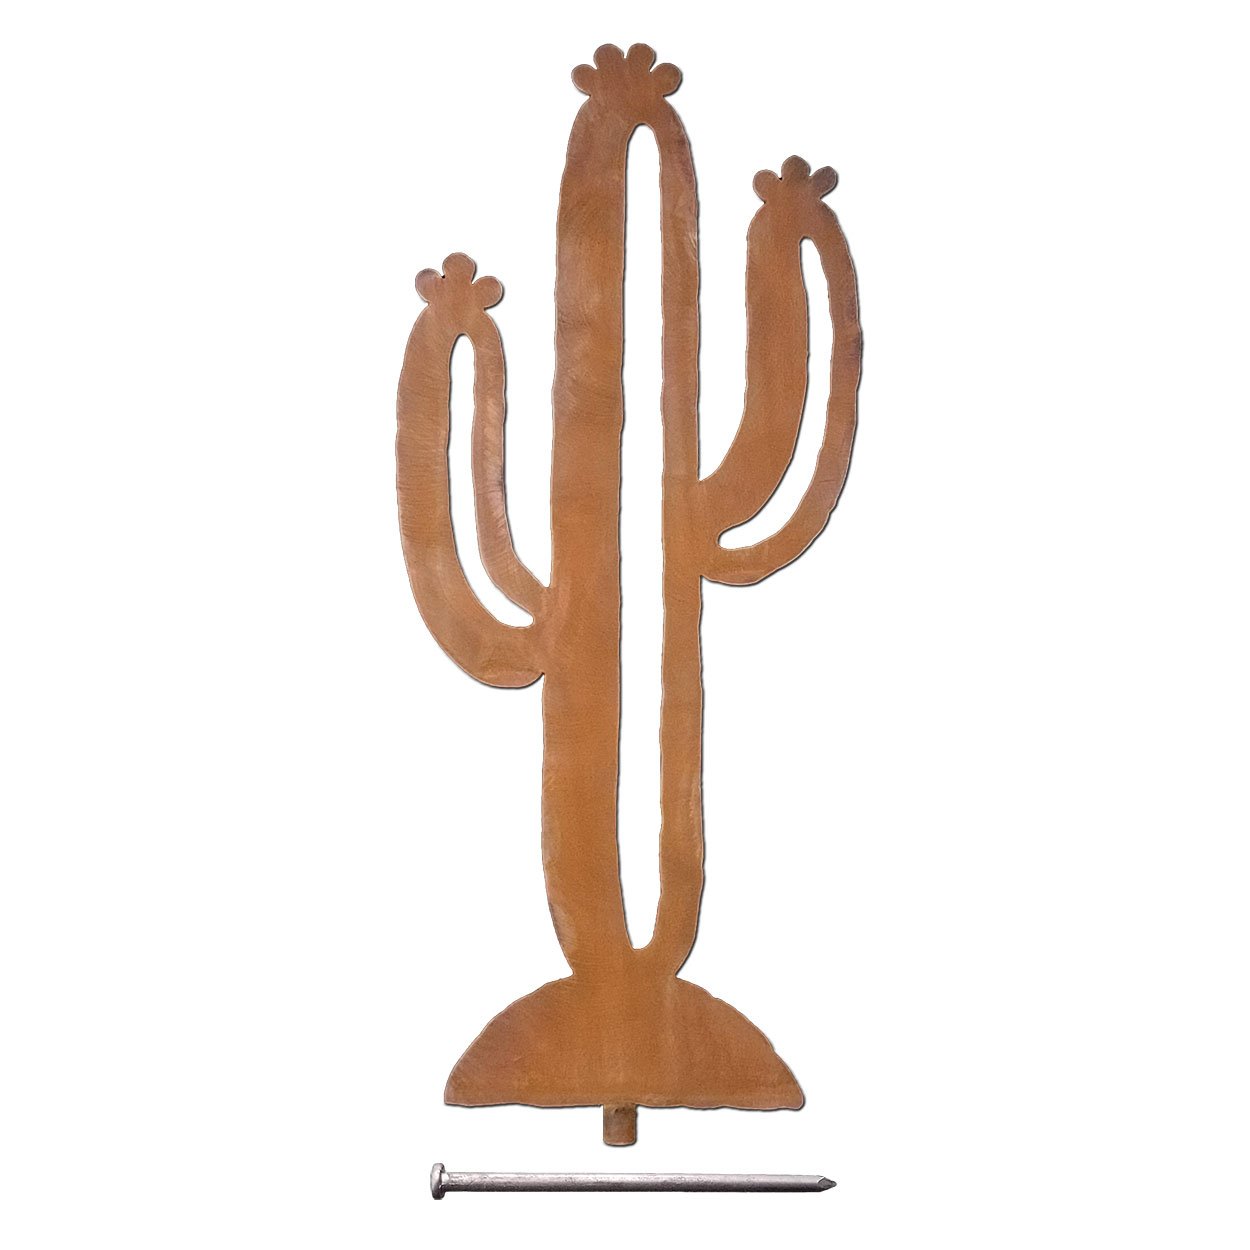 165581 - 18-inch medium Saguaro Cactus Yard Art Statue in a rich rust finish